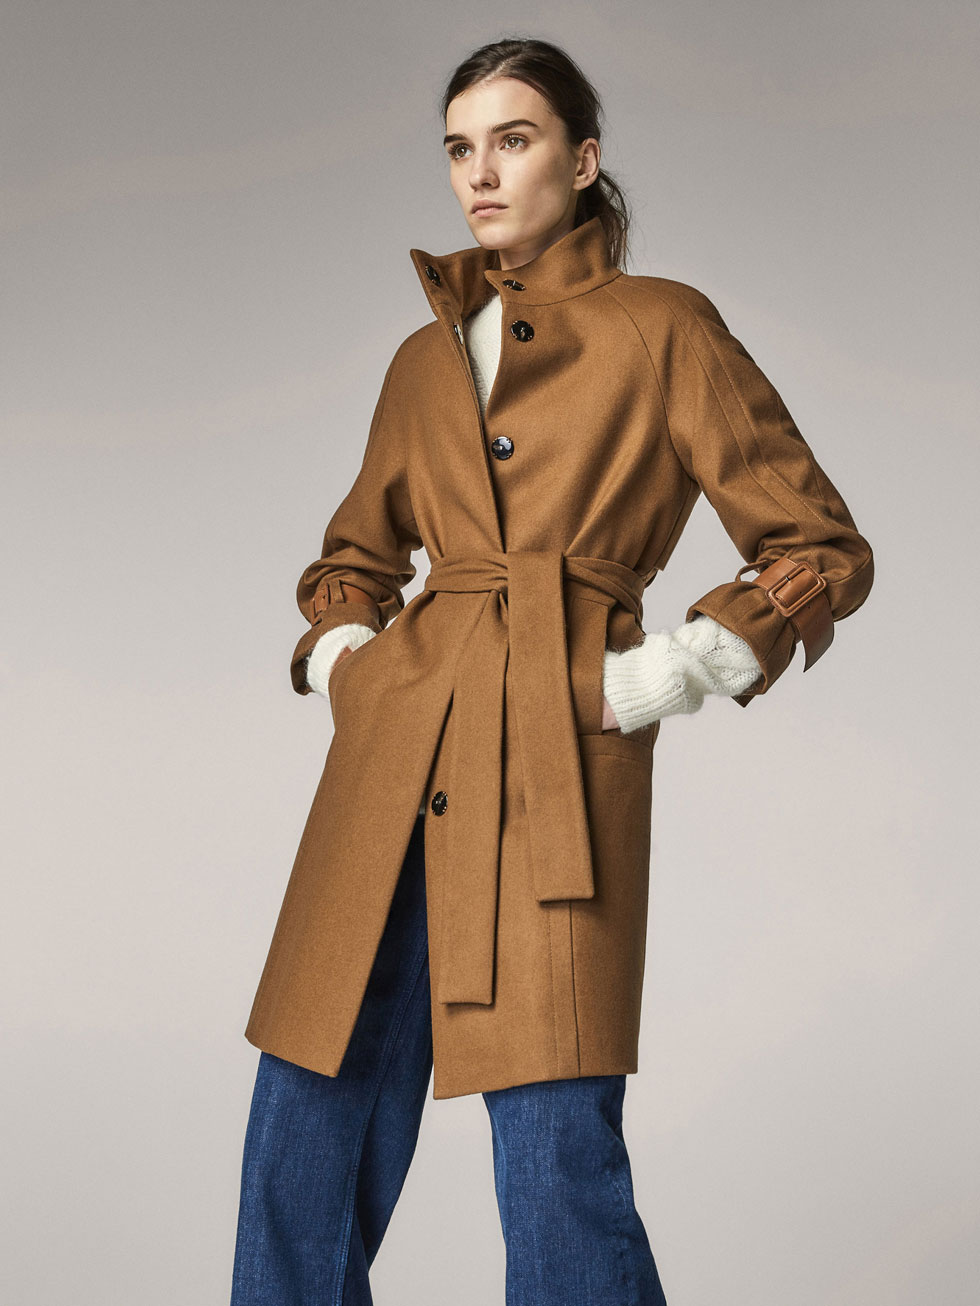 filtrar Tareas del hogar Tutor Massimo Dutti Mid Season, rebajas en la colección de abrigos y chaquetas  mujer 2018 - Modalia.es